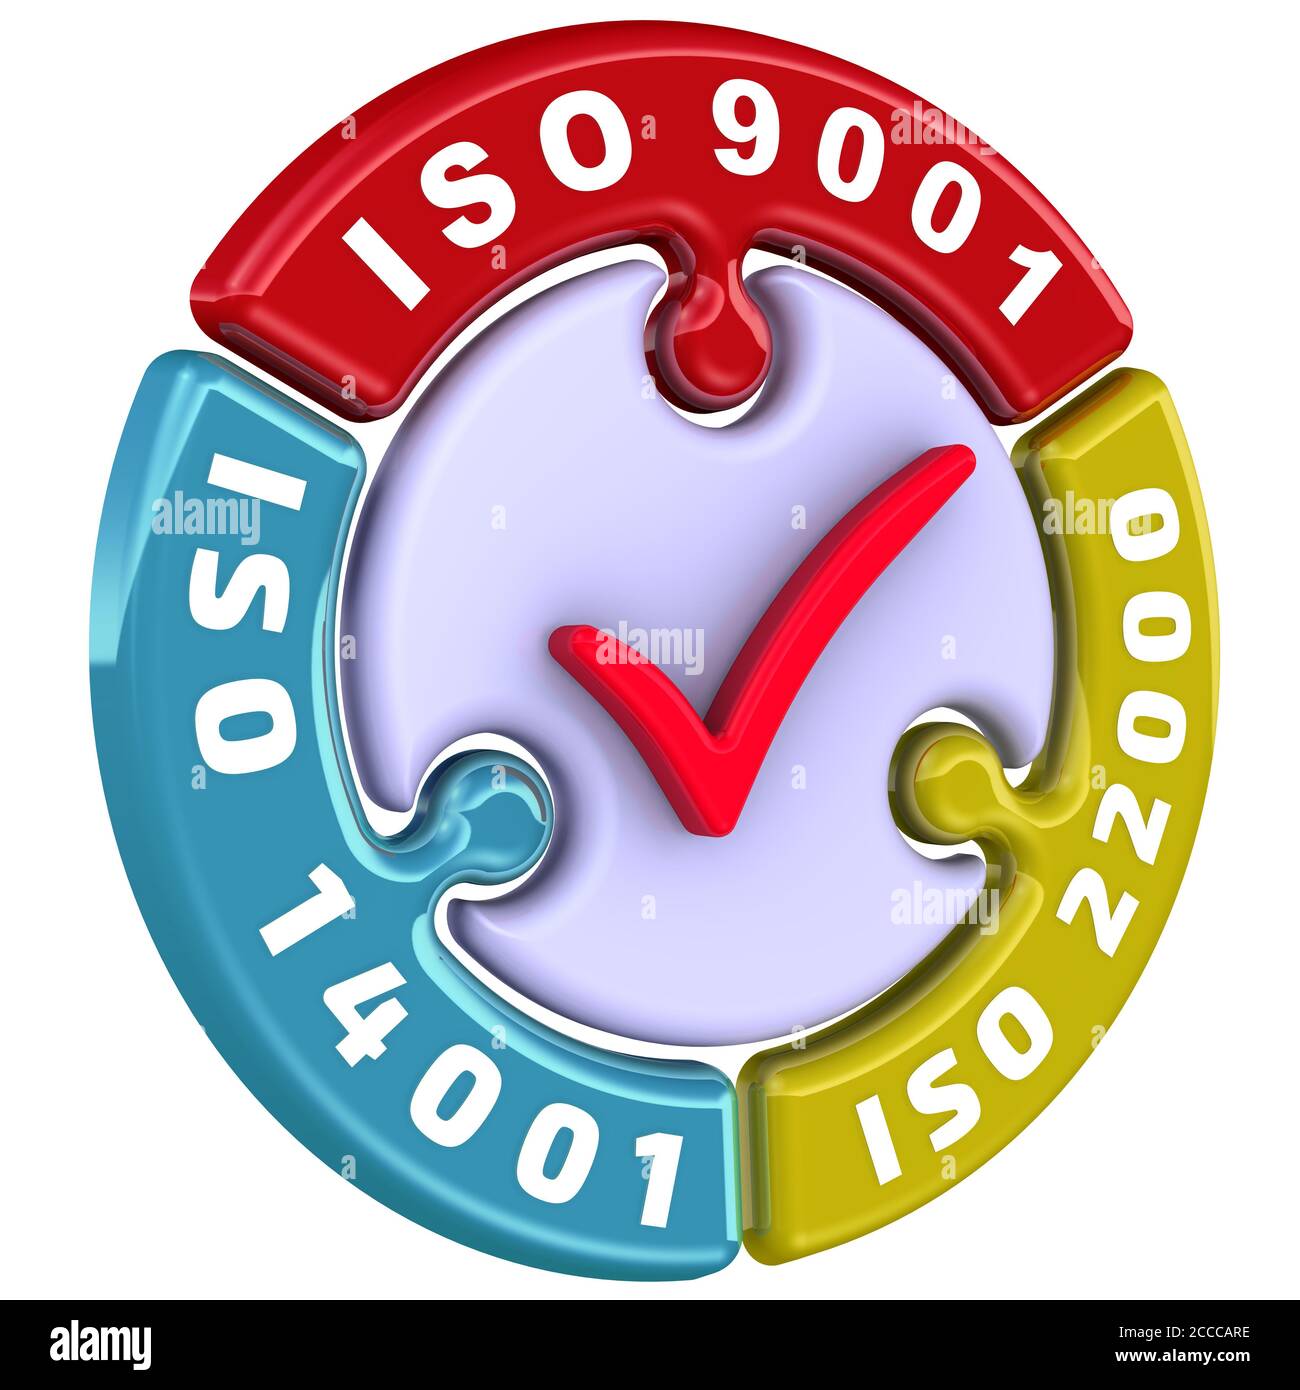 ISO 9001, ISO 14001, ISO 22000. La coche. L'inscription ISO 9001, ISO 14001, ISO 22000 sur le puzzle en forme de cercle. Illustration 3D Banque D'Images